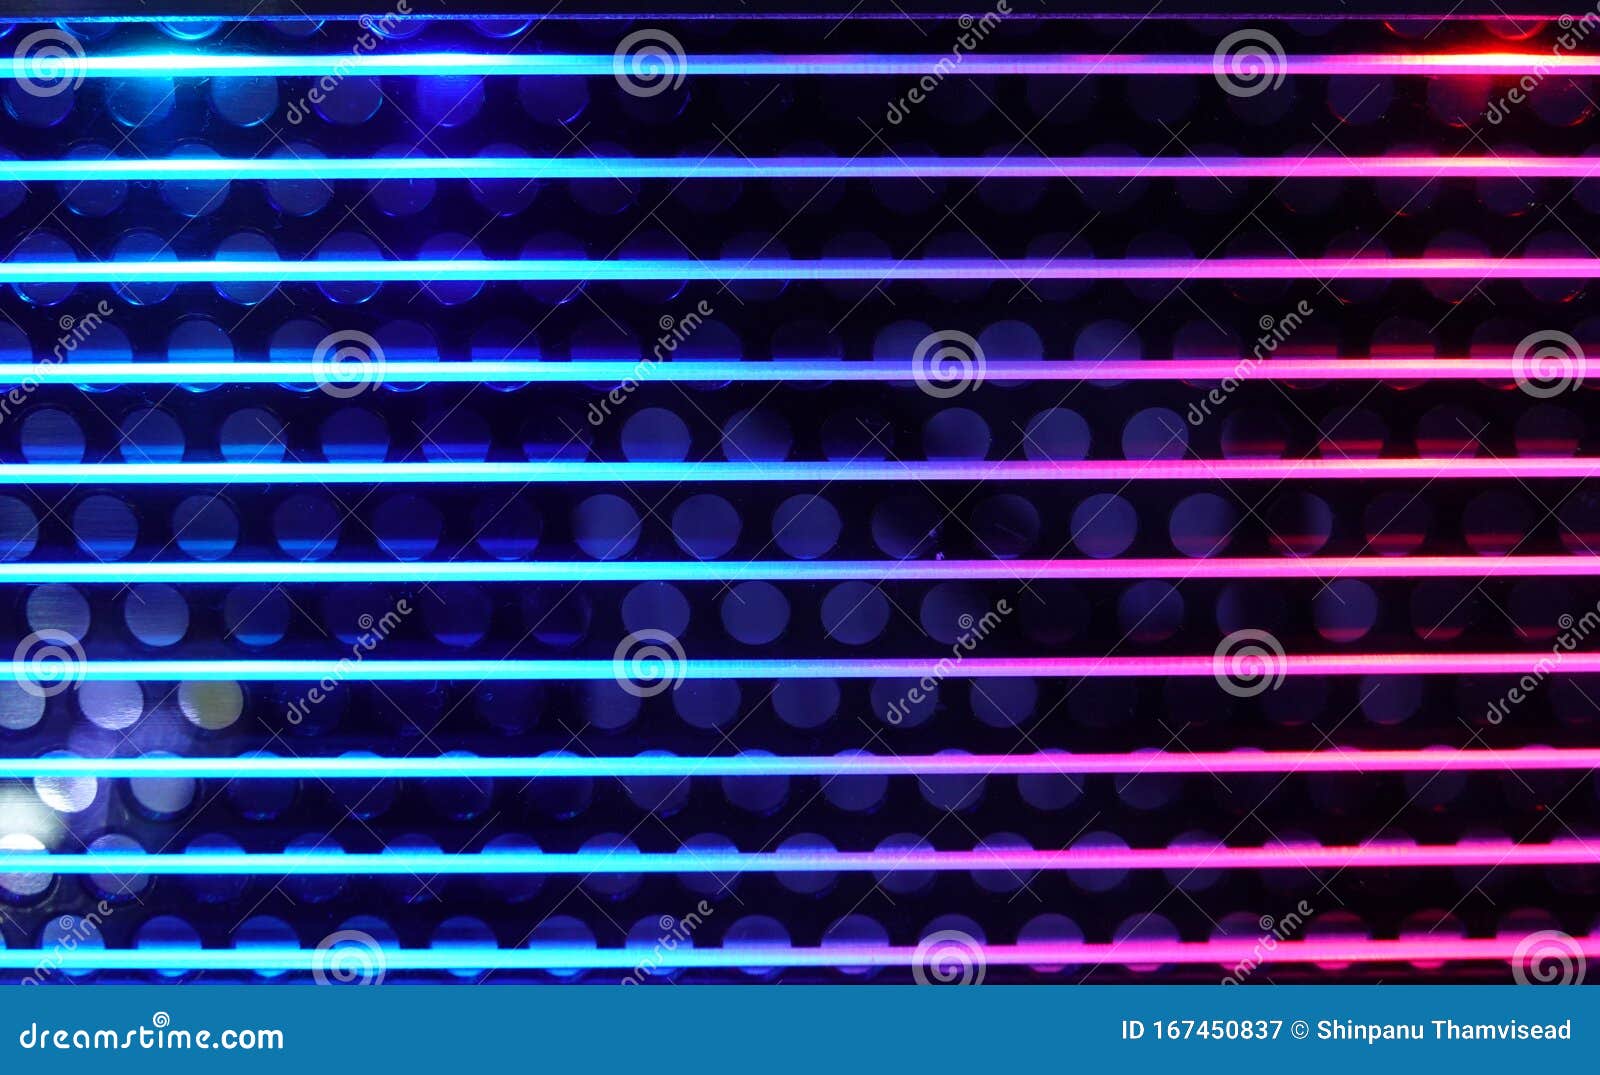 Khám phá tương lai với không gian sáng tạo của màn hình LED Neon. Từ nền tảng trùng trùng buồn thảm đến sự kết hợp tôn lên vẻ đẹp hiện đại của từ khóa \